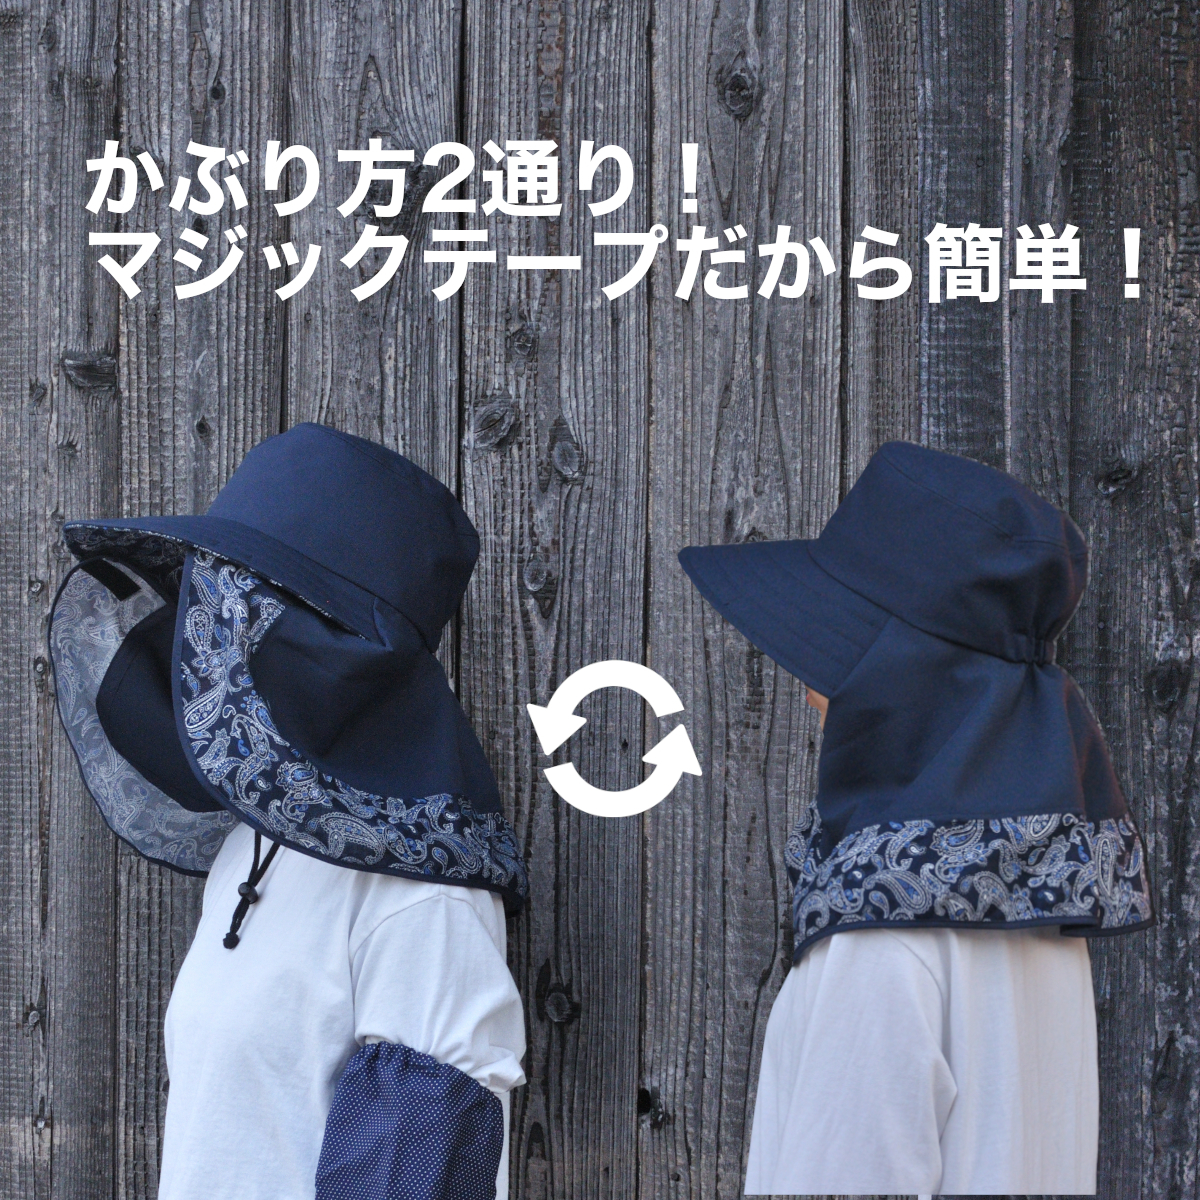  шляпа от солнца сад шляпа сделано в Японии 2WAYtare имеется широкополая тент сельскохозяйственные работы садоводство уличный модный работа для сельское хозяйство шапочка тент 